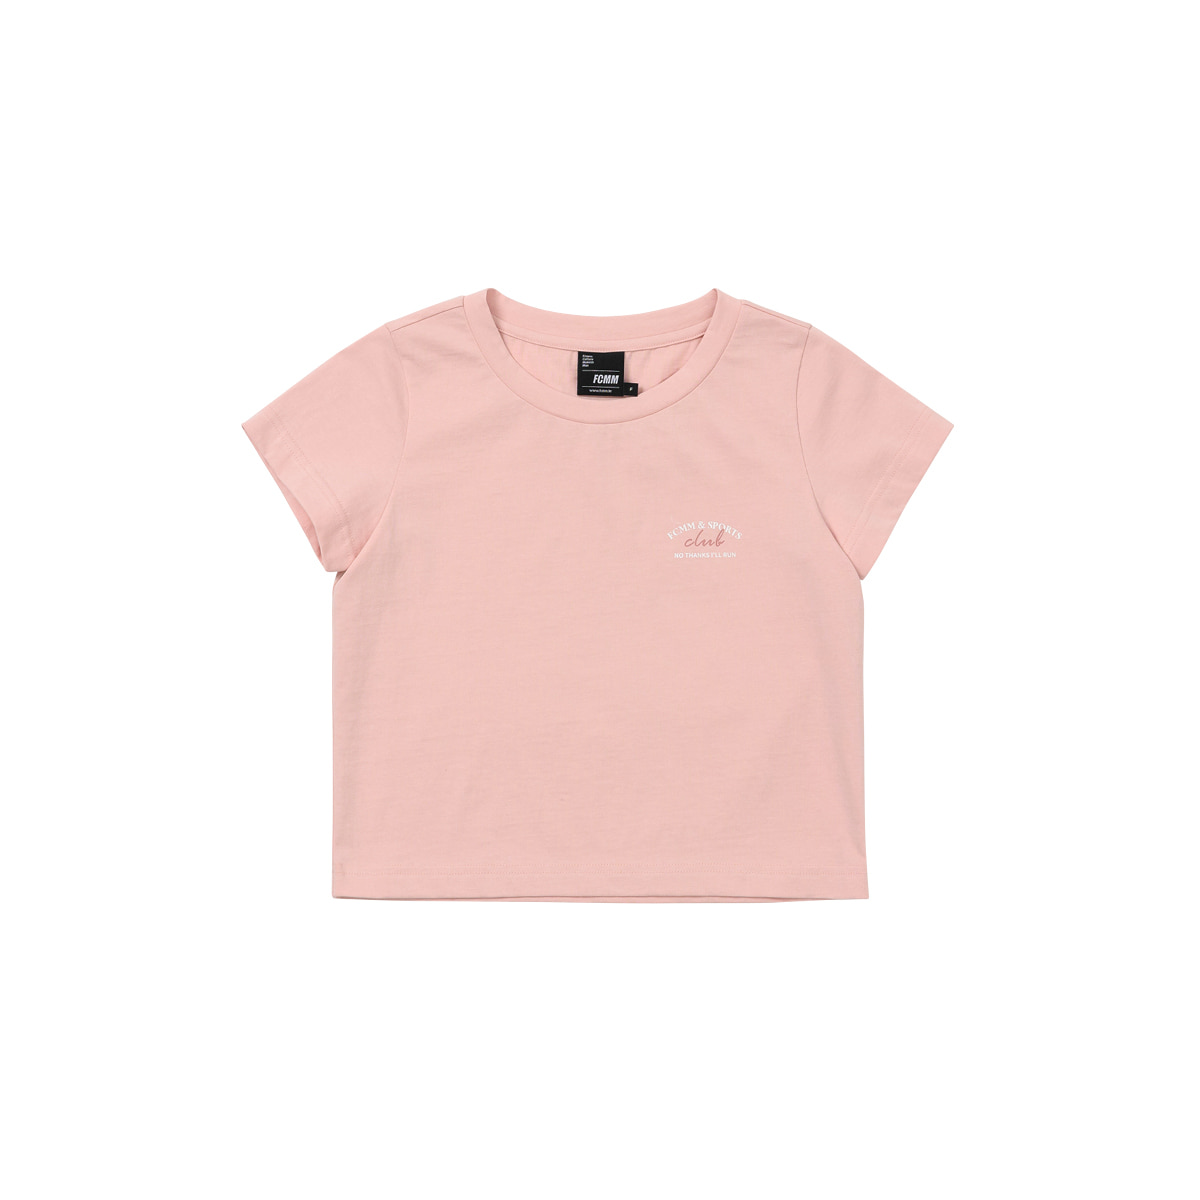 포인트 크롭 티셔츠 - 살몬 핑크